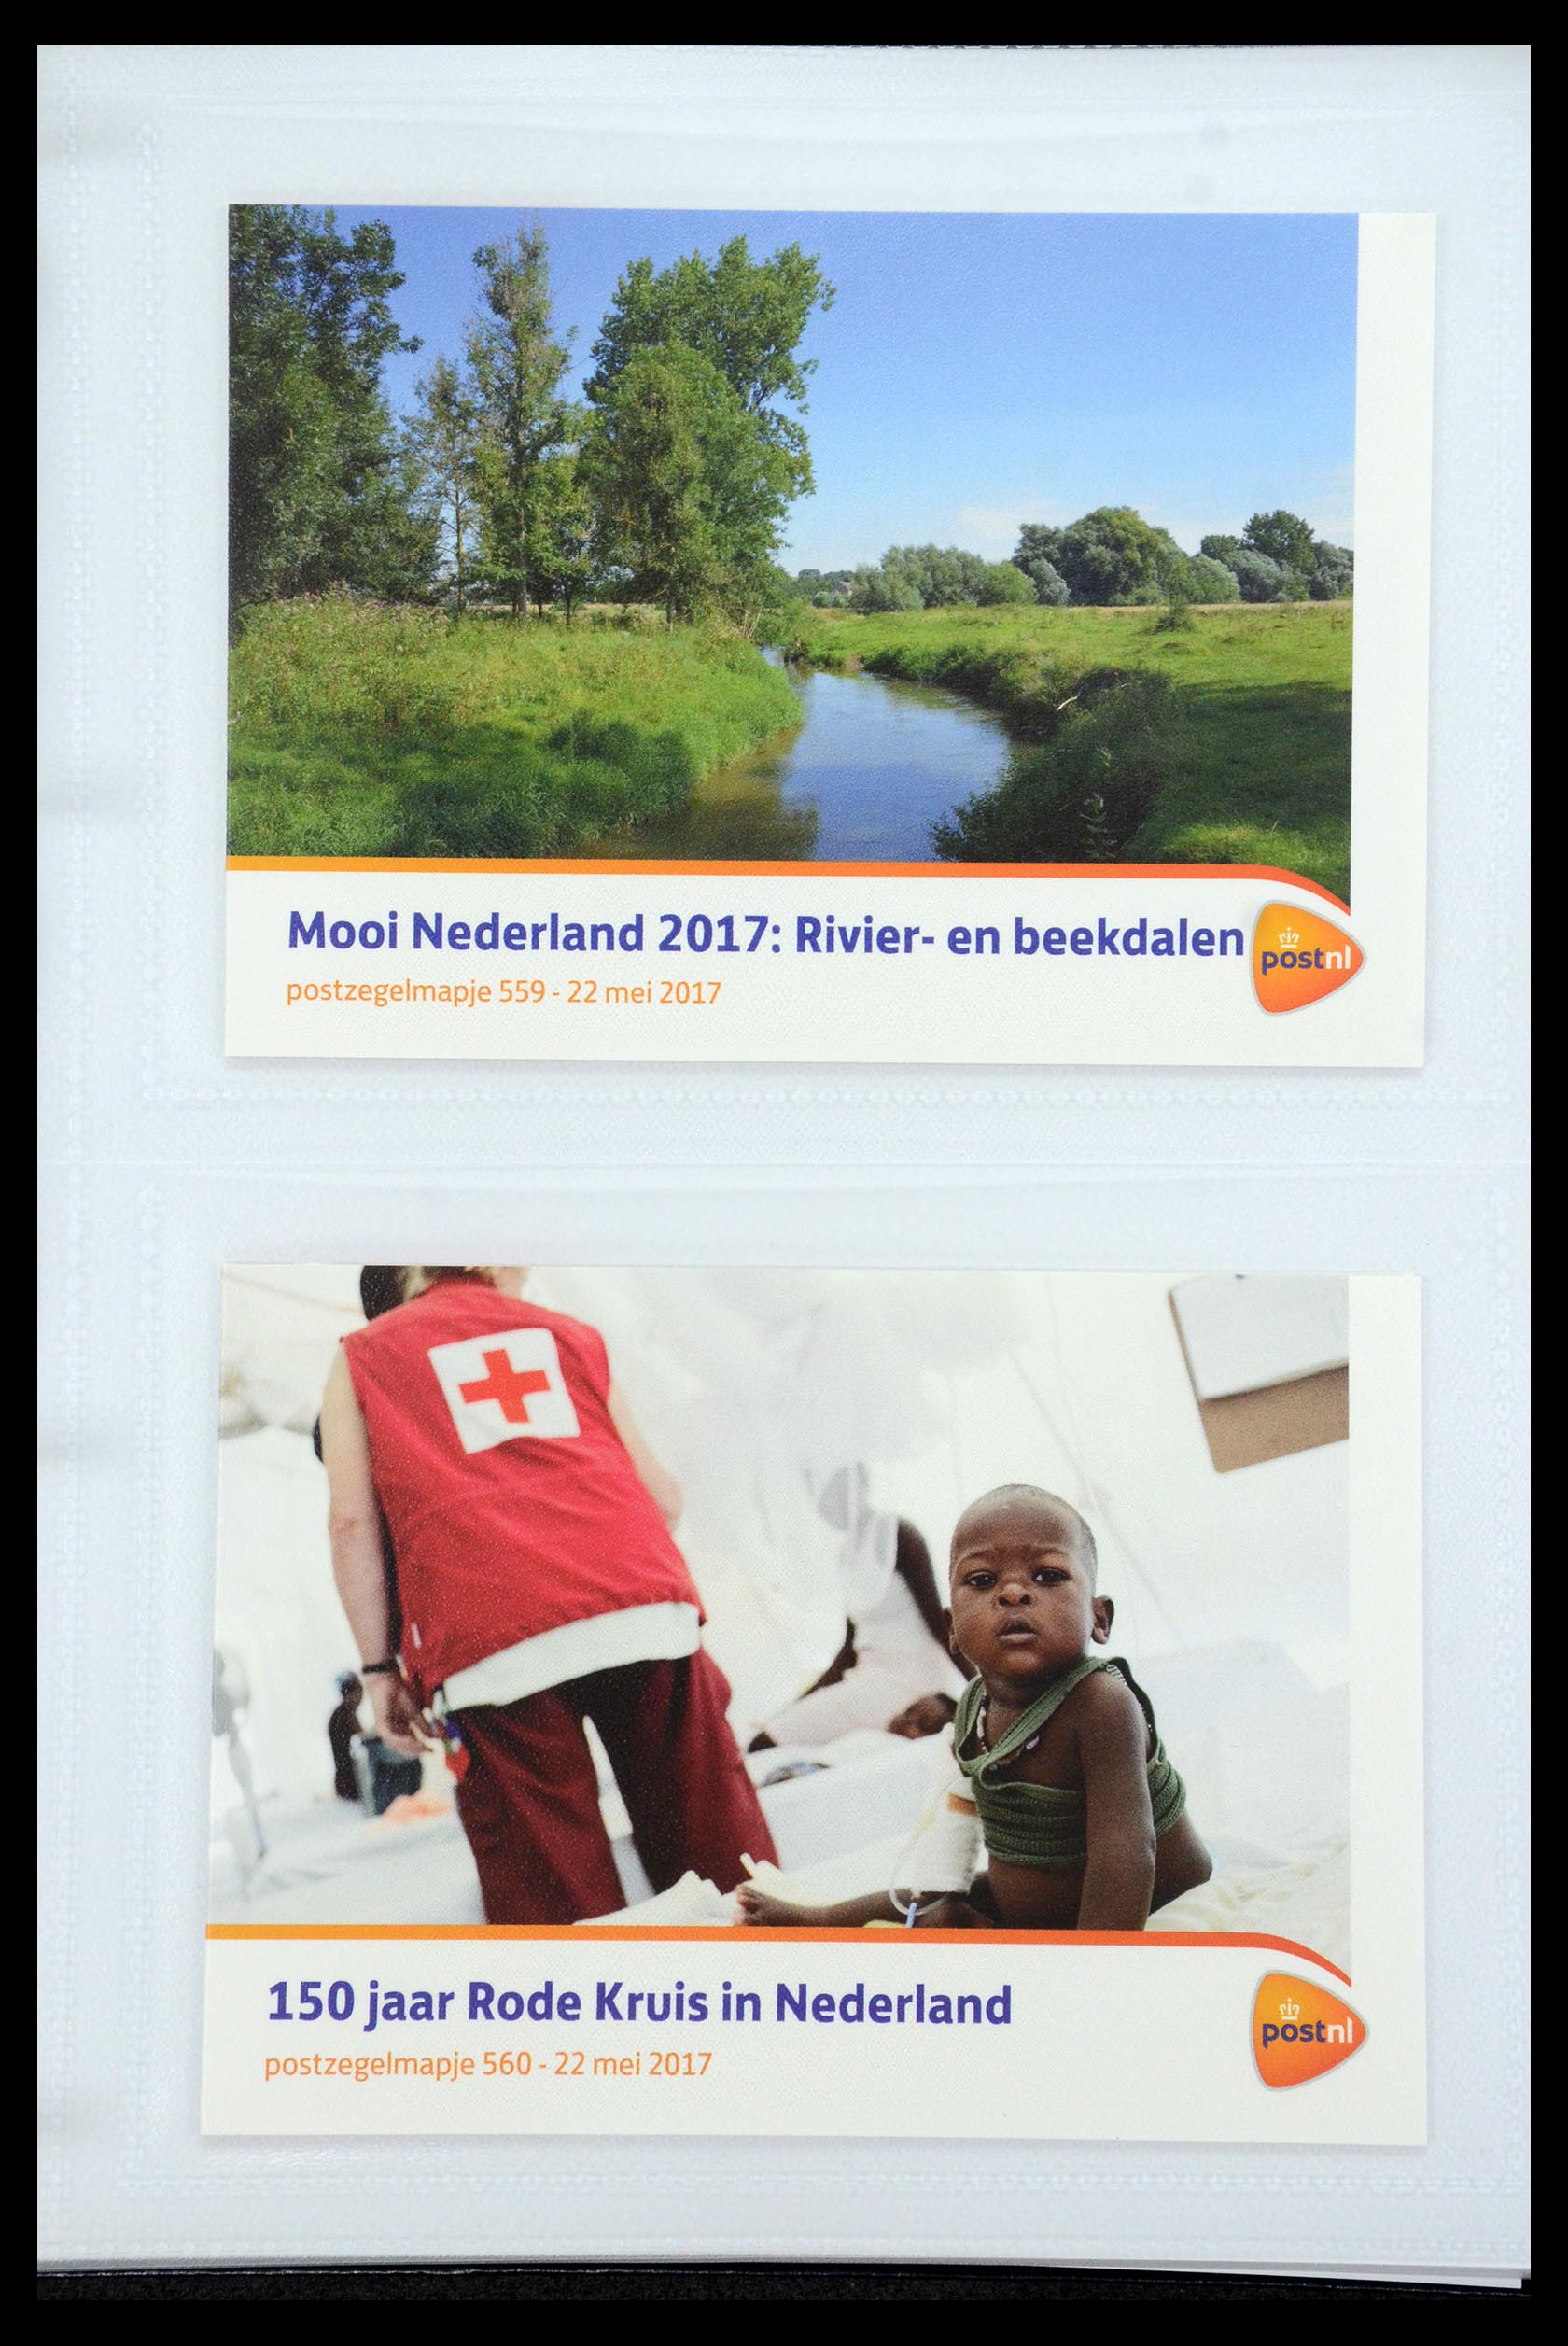 35947 335 - Stamp Collection 35947 Netherlands PTT presentation packs 1982-2019!